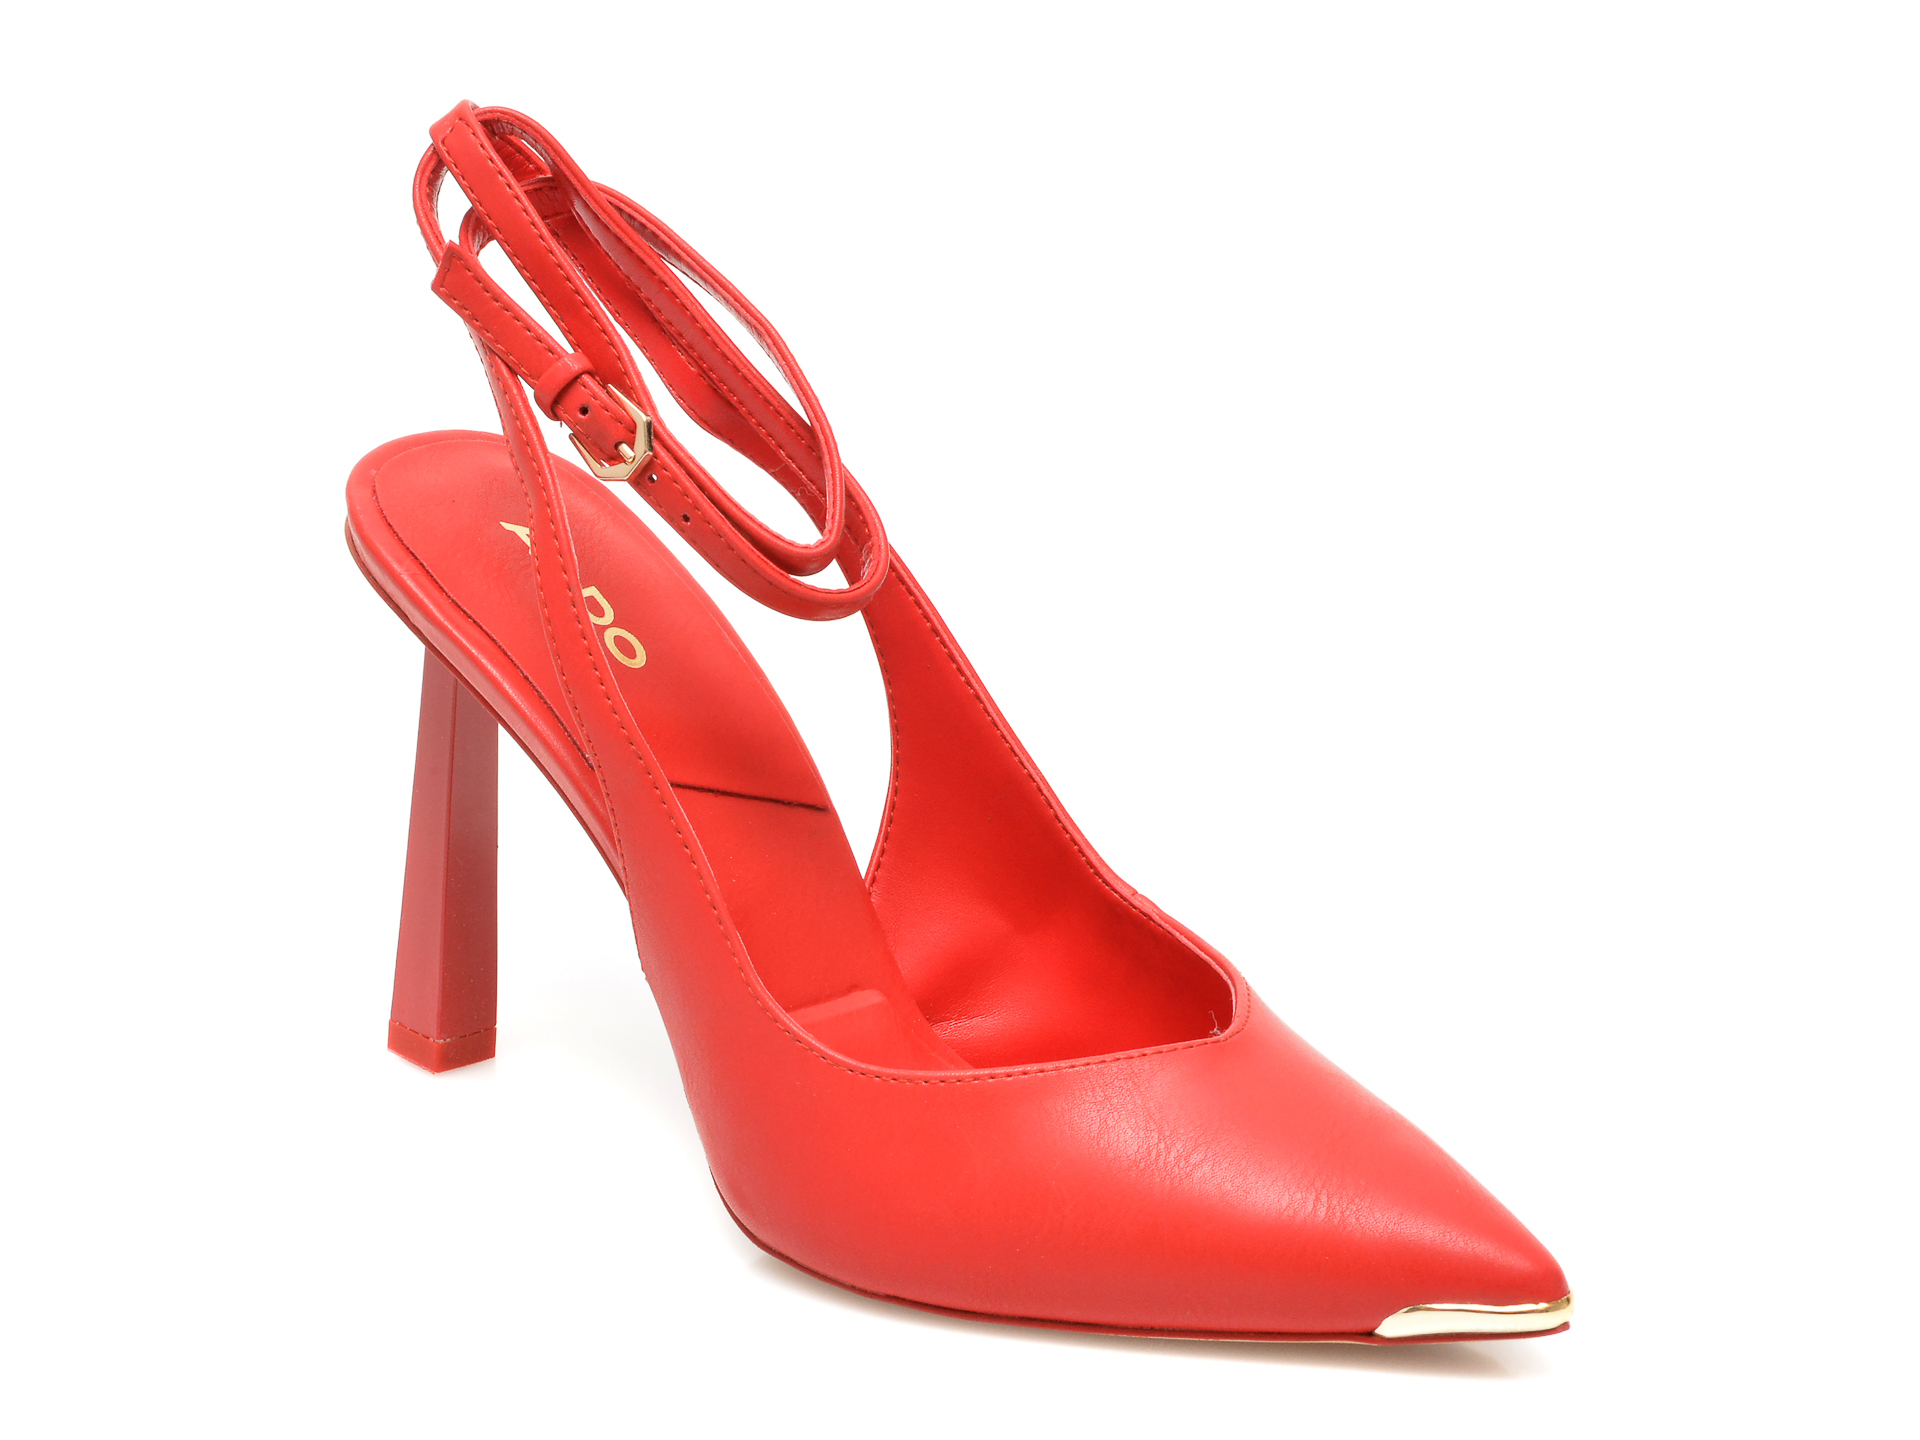 Pantofi ALDO rosii, ISABELA600, din piele ecologica Aldo